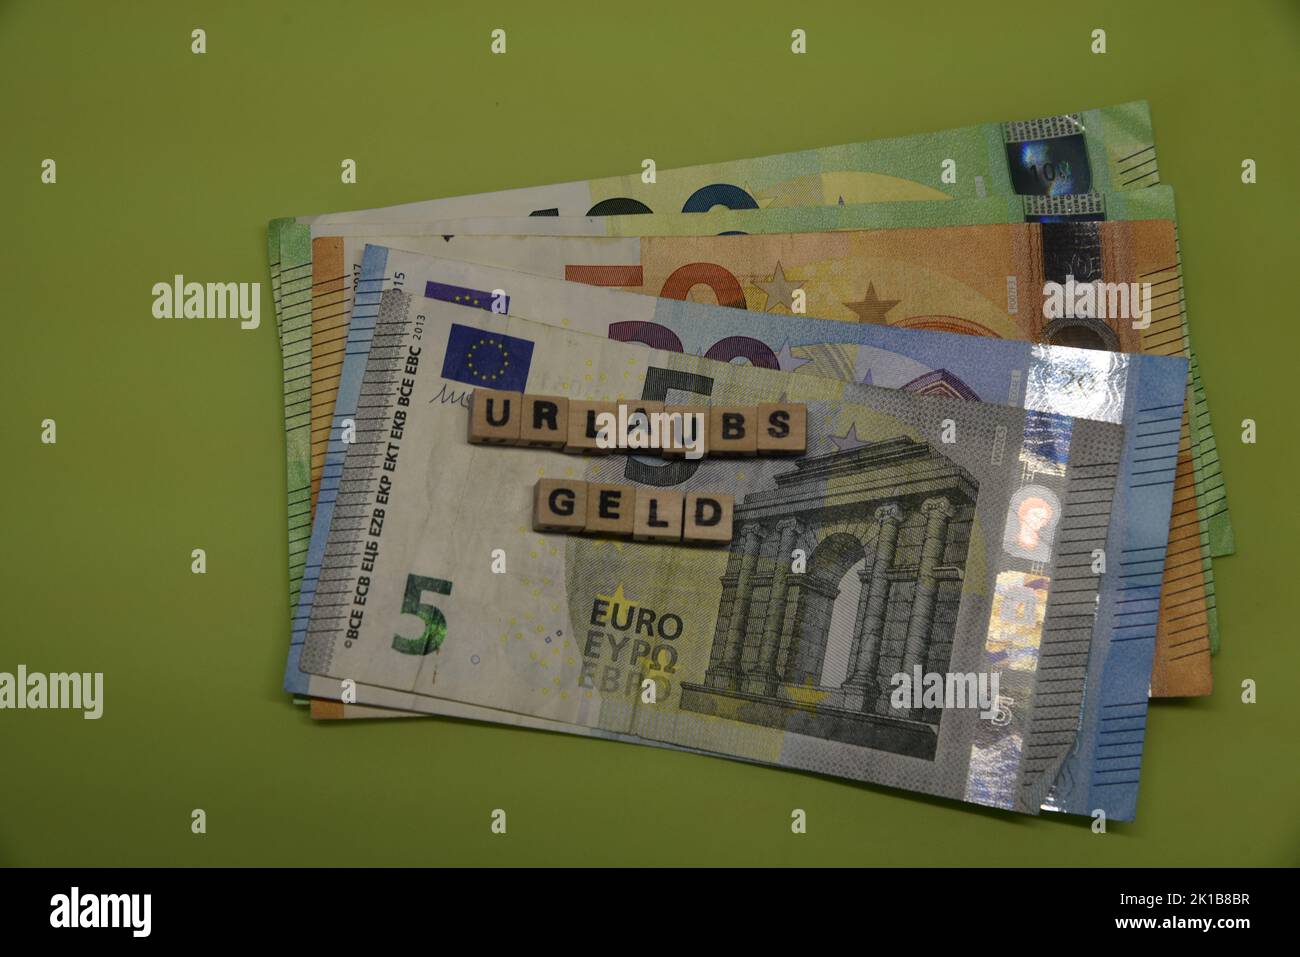 le mot allemand pour un paiement vacatiob avec des briques wodden et des billets de banque en euros Banque D'Images